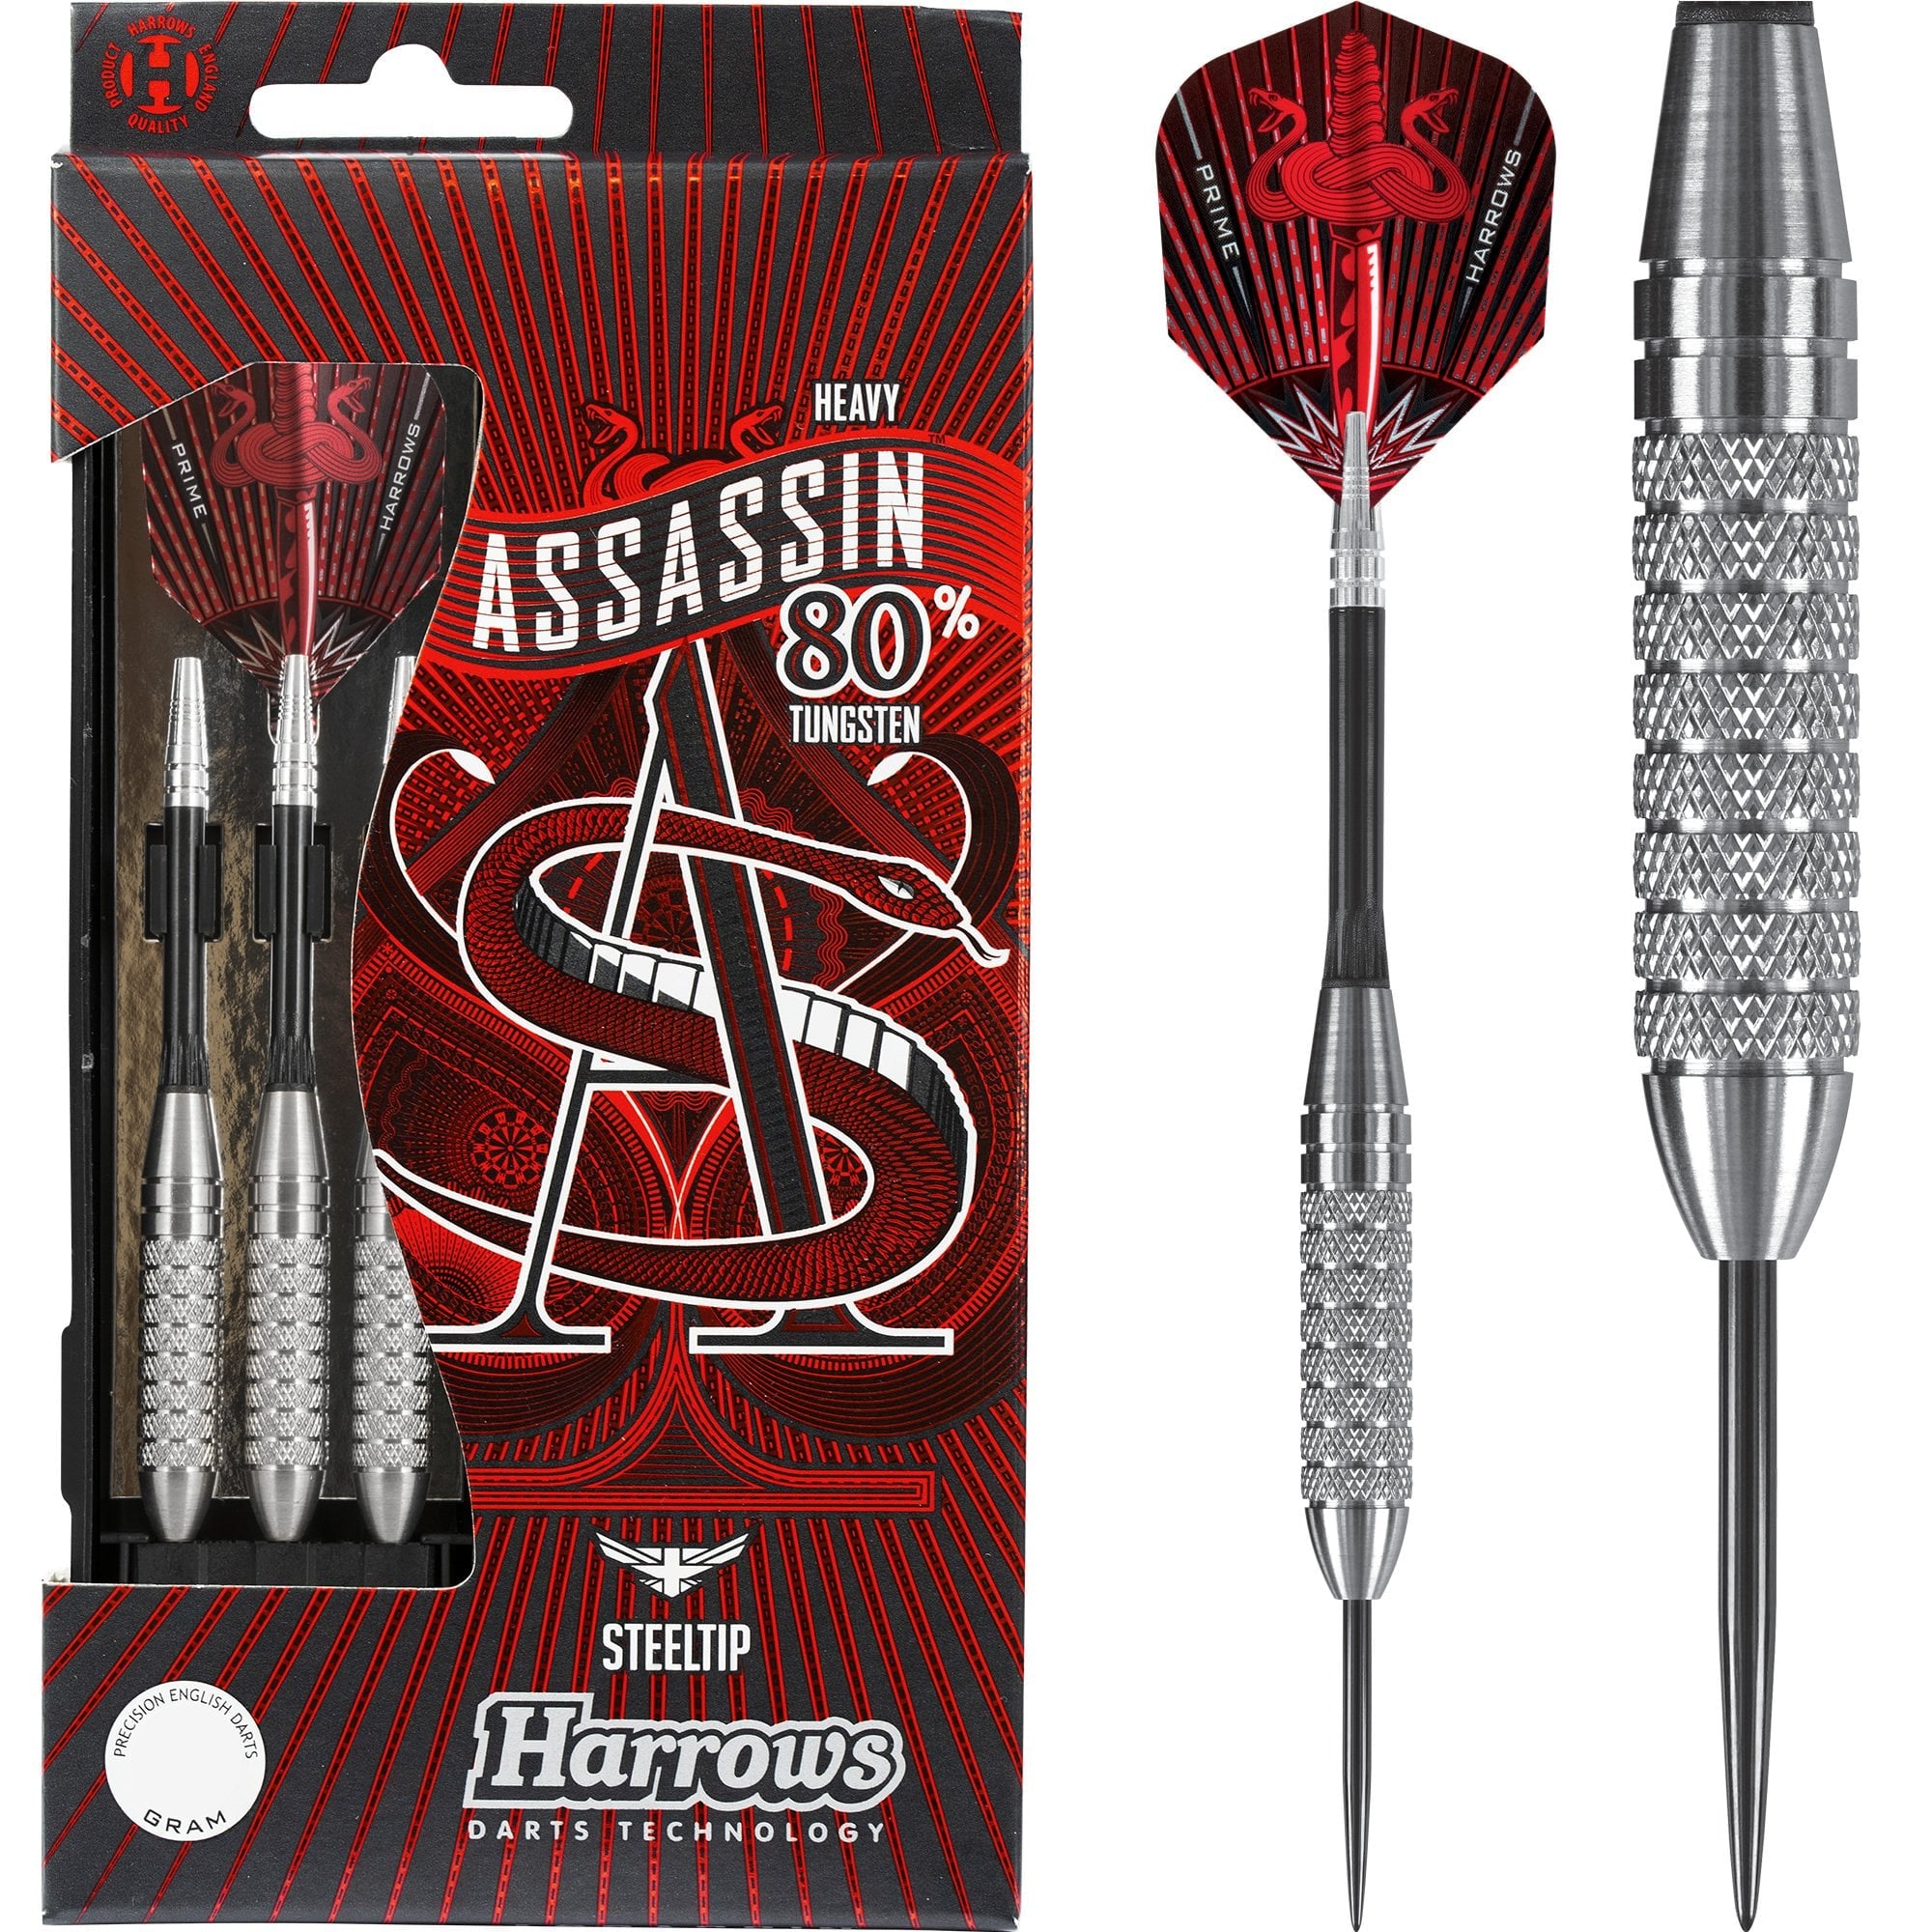 Harrows Assassin Darts Steel Tip - - Knurled - 38g